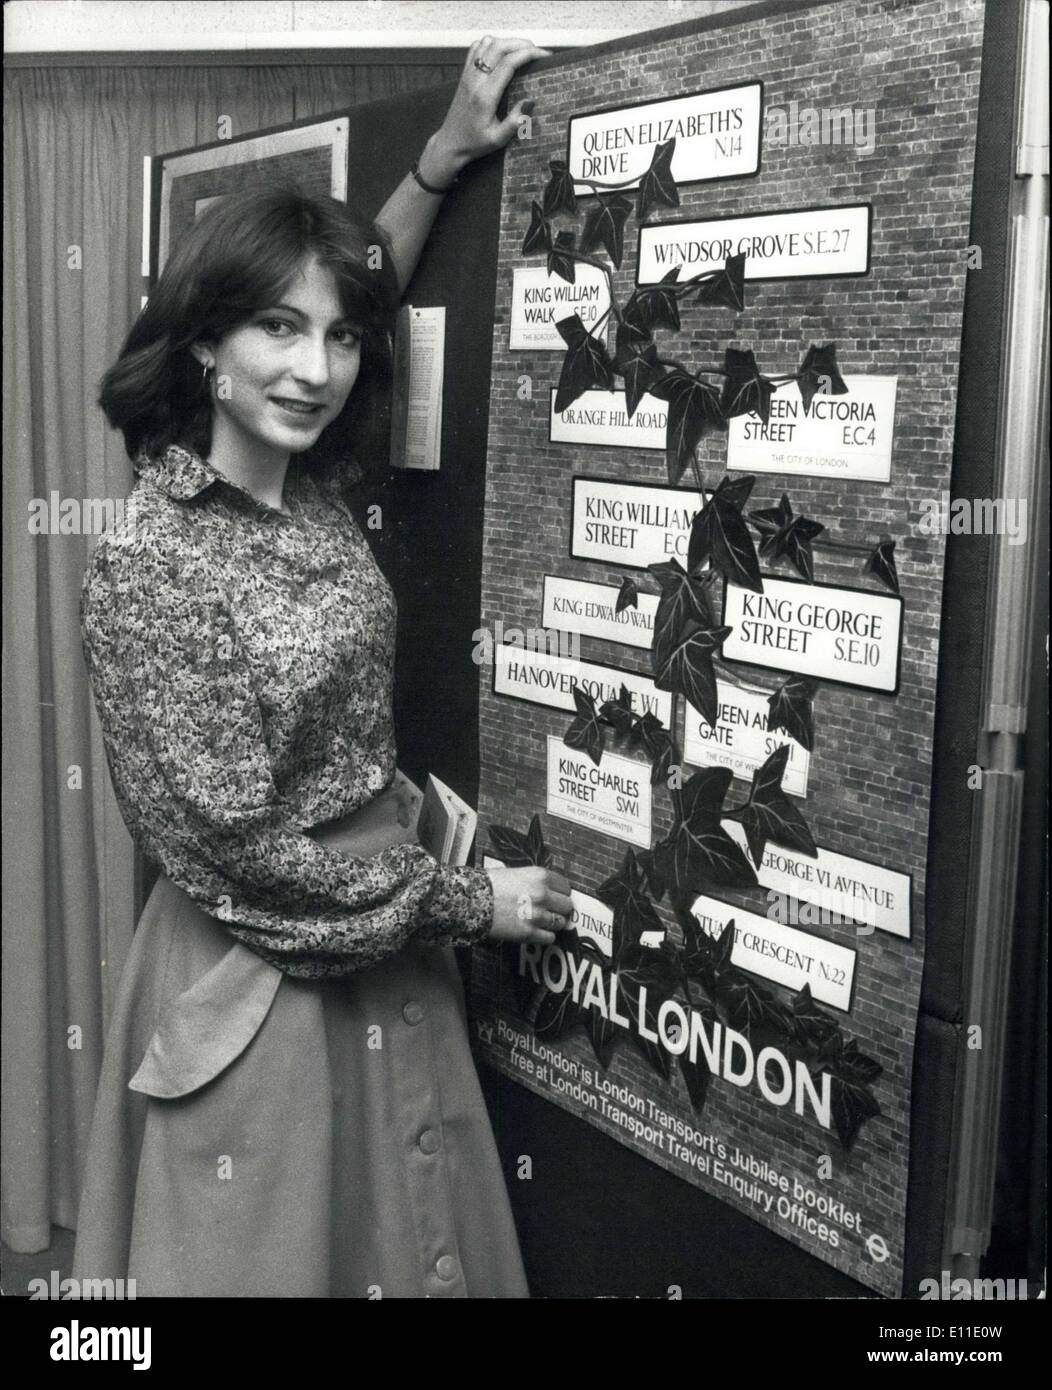 19 mai 1977 - Girl Art Student's Poster le jubilé d'argent de Transport de Londres : La concurrence un jeune étudiant d'Art de Londres a gagné un concours de jubilé d'argent avec un ''Prix''-a Londres montrant qui sera vu par des millions de personnes. Un design de 21 ans, Sue Horner, un étudiant de troisième année design graphique au London College of Printing, a été choisi pour l'affiche du Jubilé de London Transport, ''Royal London'' Banque D'Images